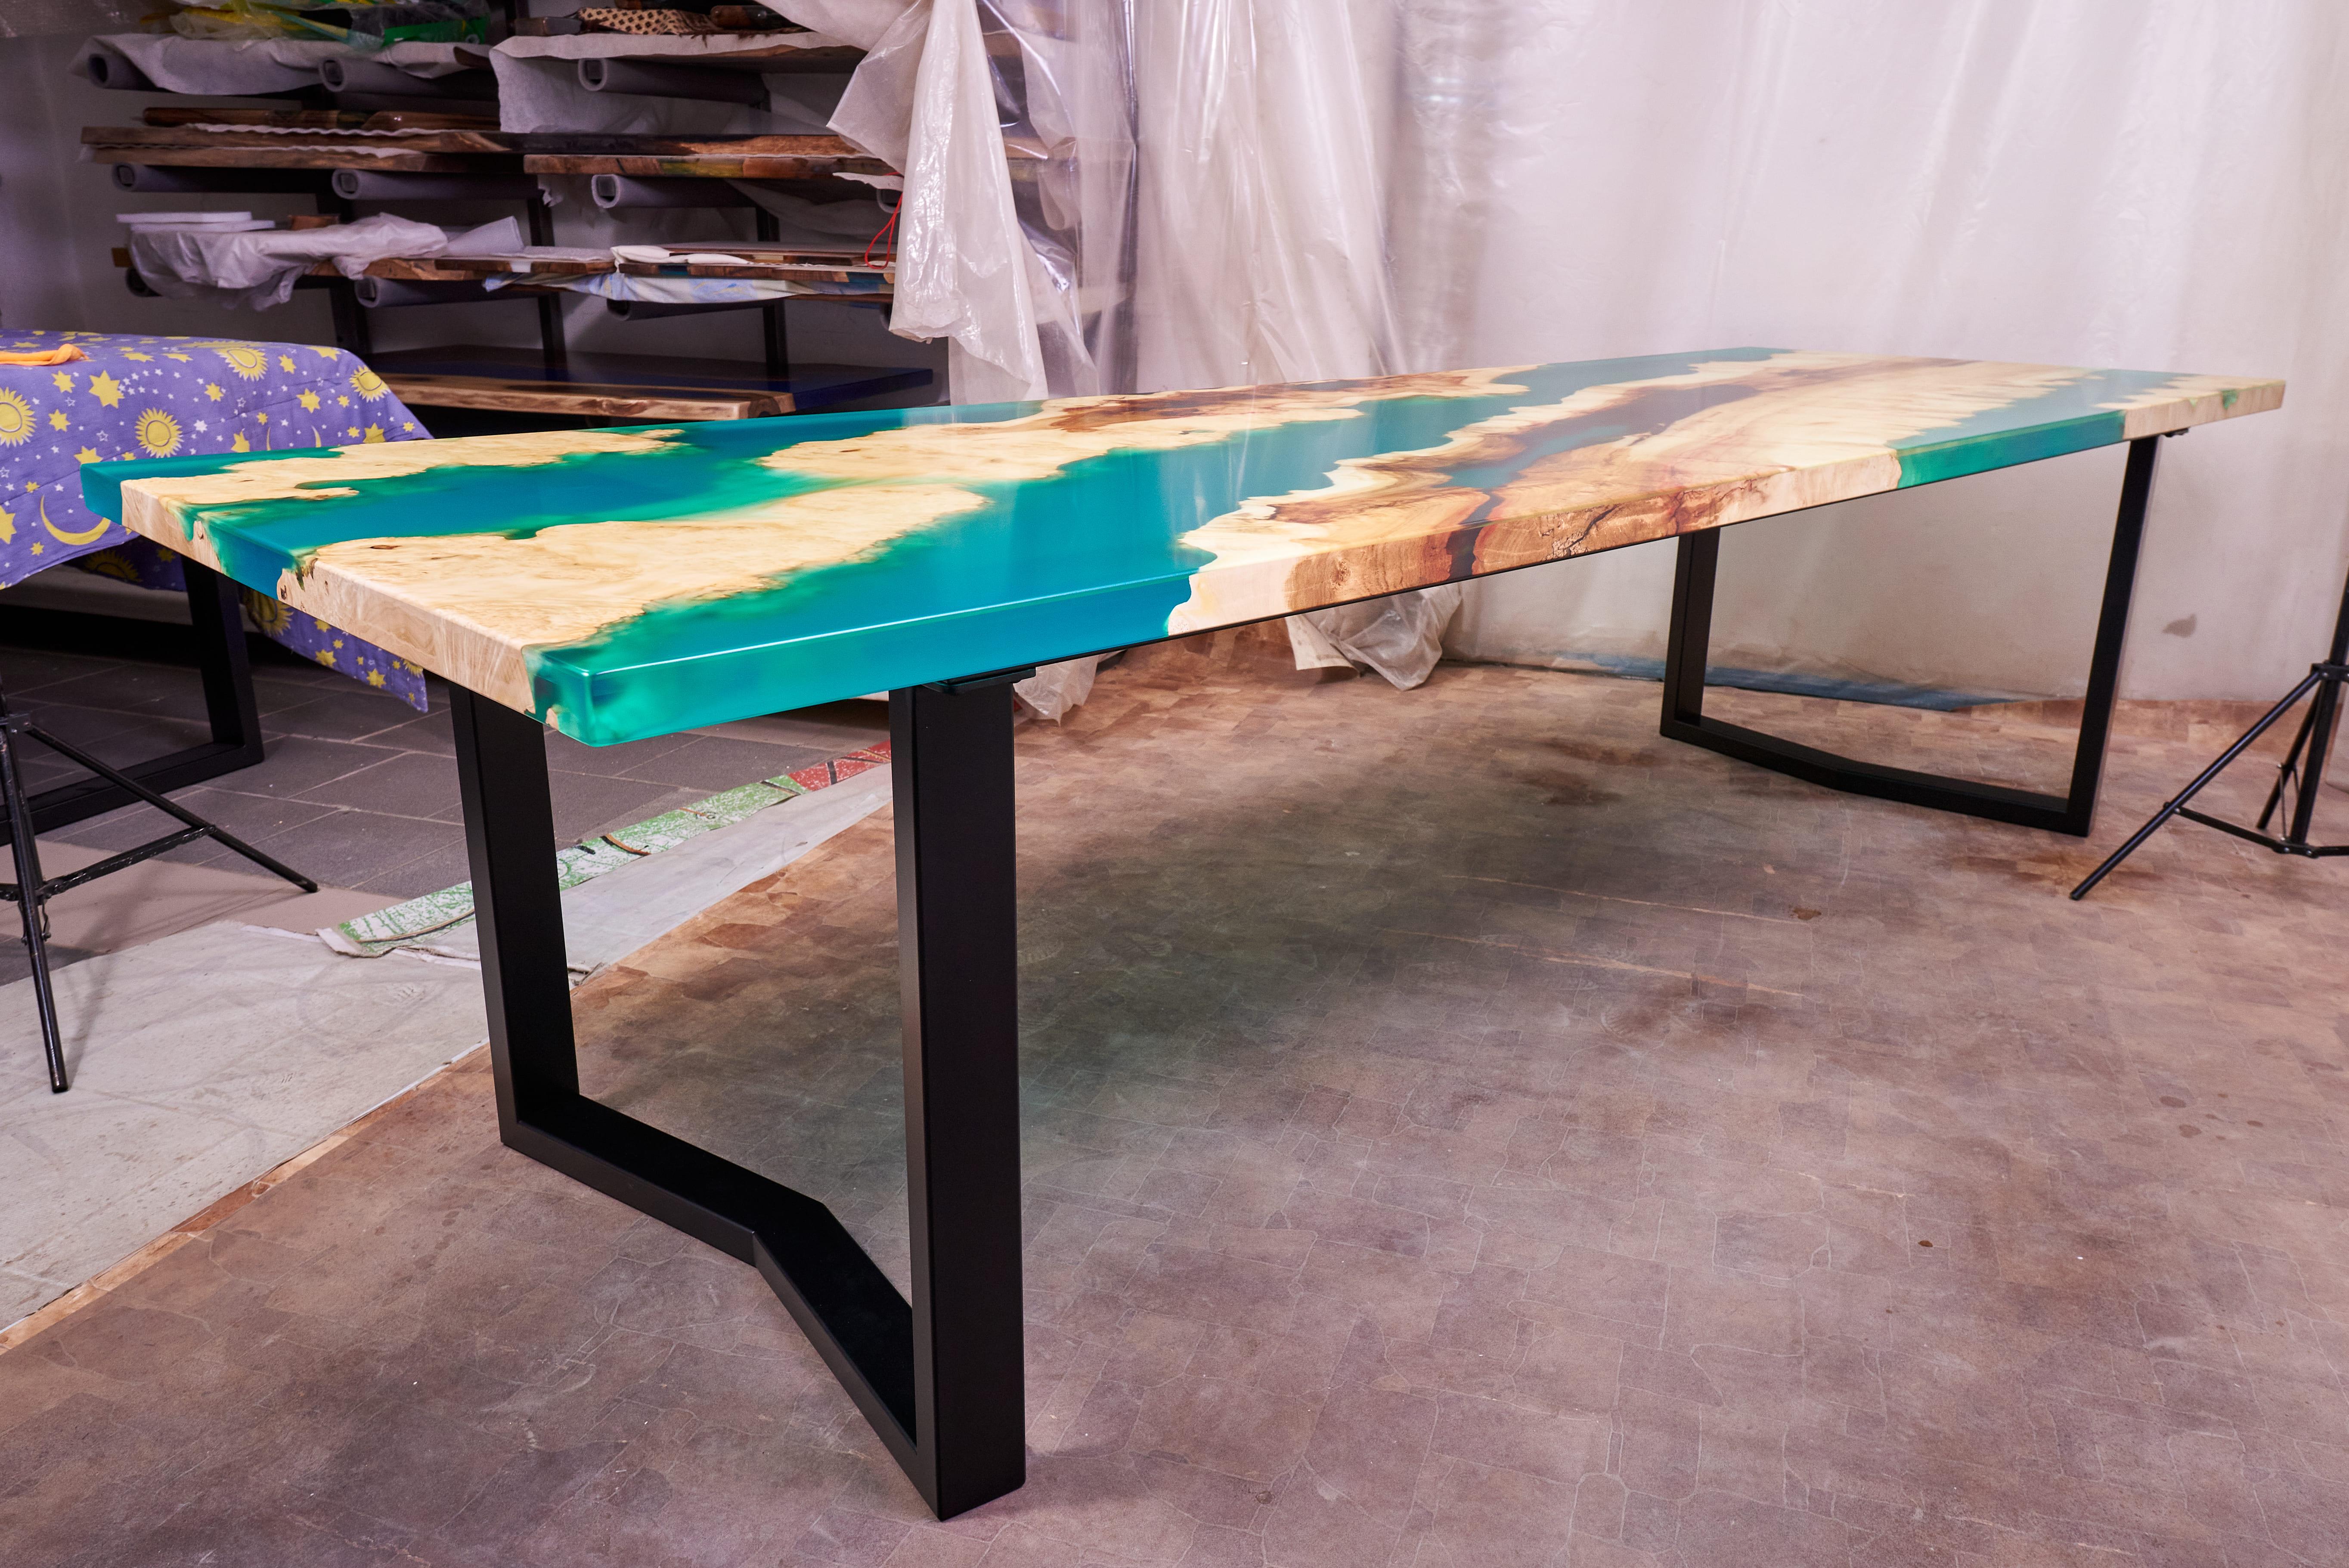 Wir präsentieren den beeindruckenden Esstisch Ancient Maple Burl Large Dining Table with Emerald Resin - ein wahrhaft einzigartiges Meisterwerk, das von den Händen großer Künstler gefertigt wurde. Dieser prächtige Tisch vereint die zeitlose